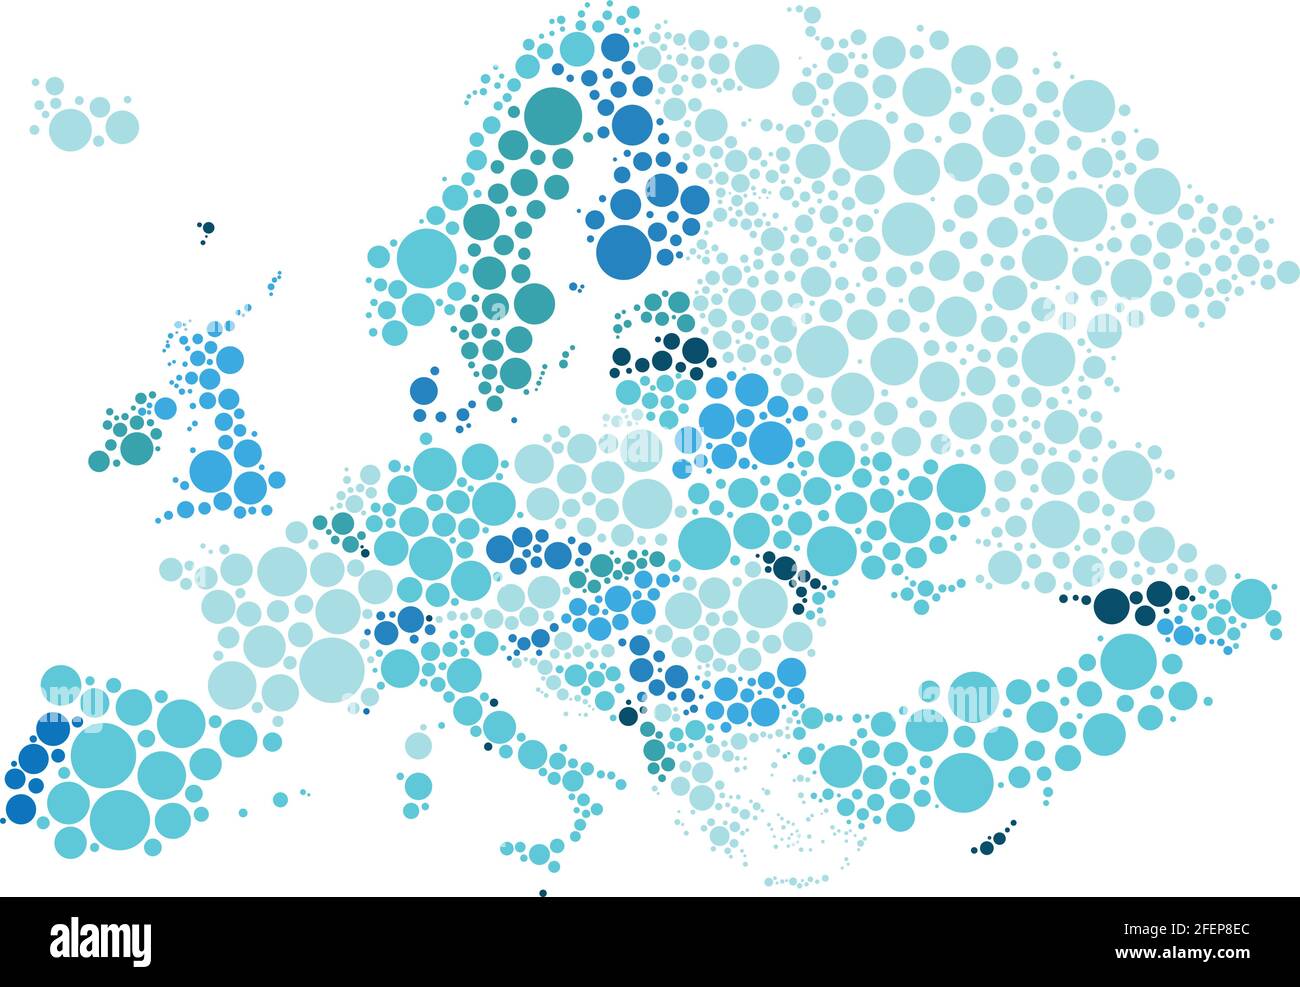 Vektor-Illustration der politischen Karte von Europa mit verschiedenen Größen und Tönen von blauen Punkten entworfen. Stock Vektor